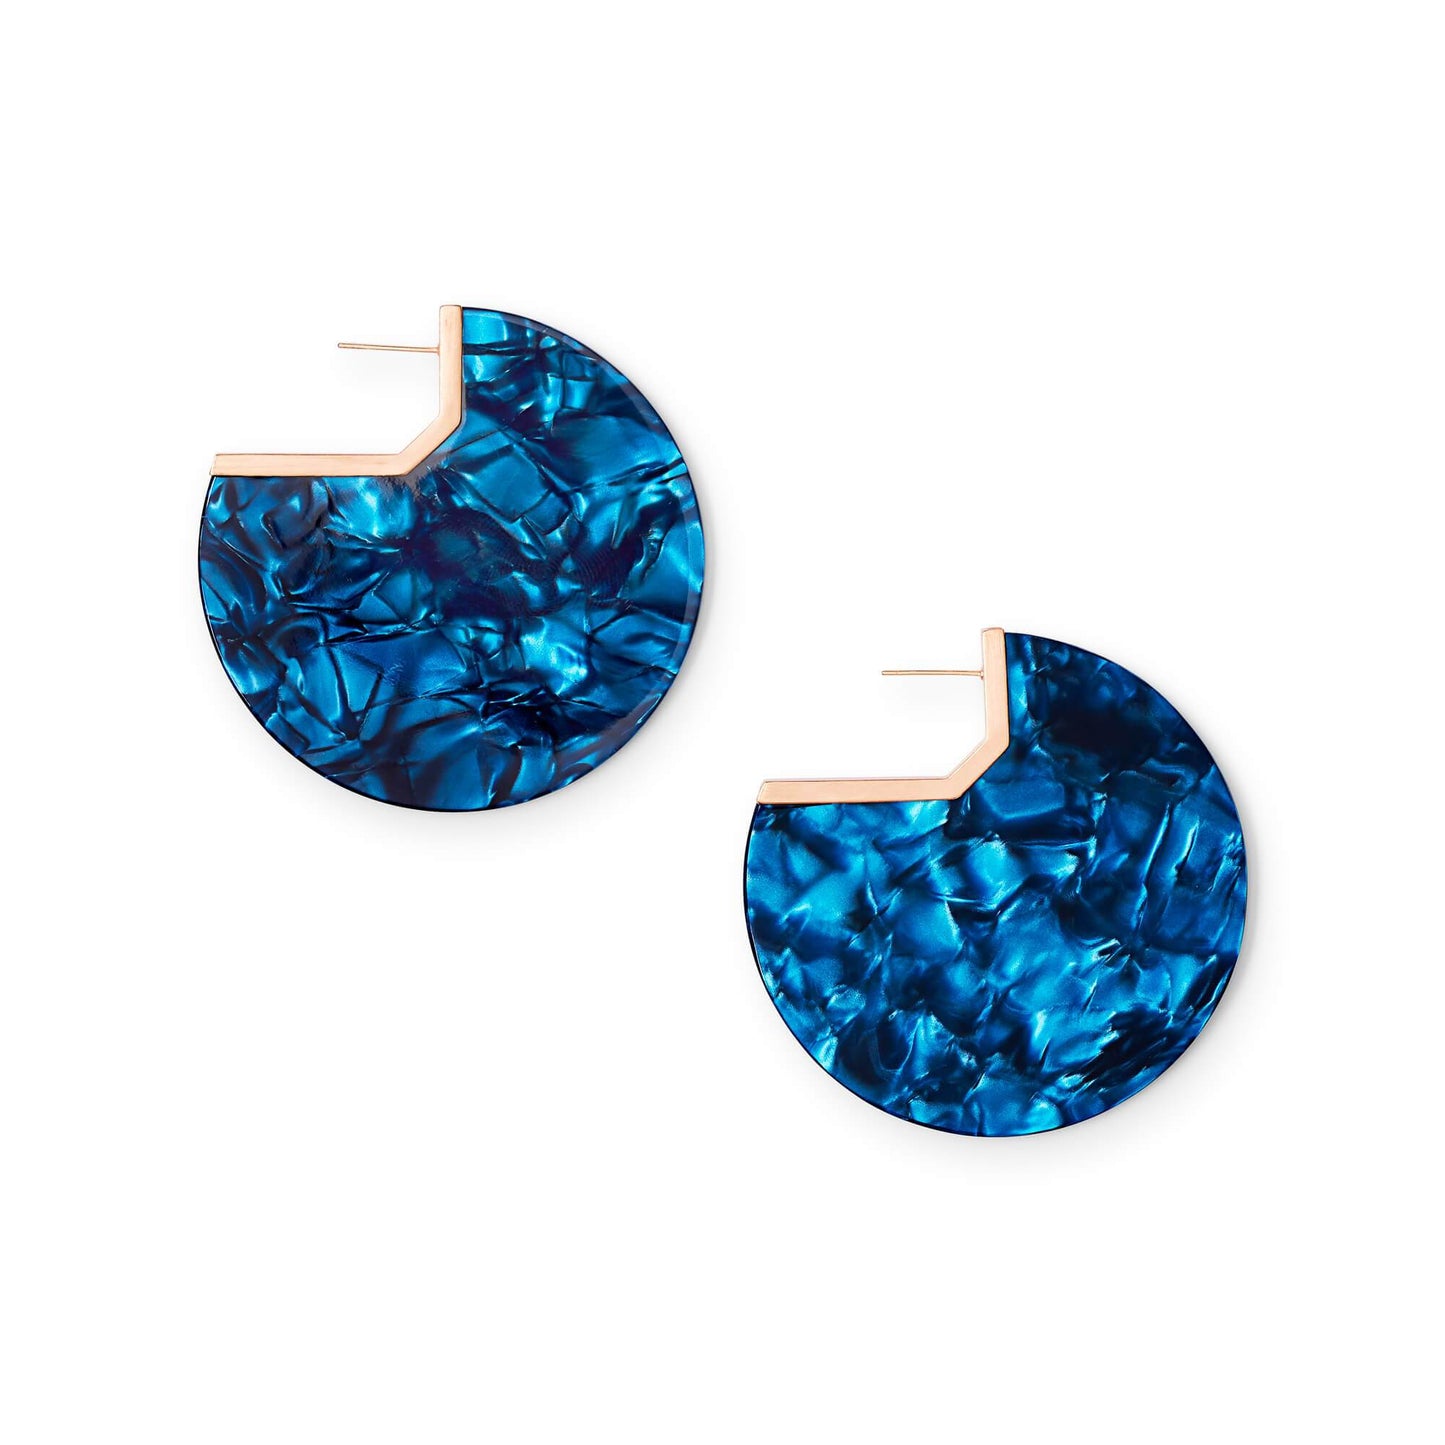 KS Kai Earrings in Navy Blue Acetate Rose Gold